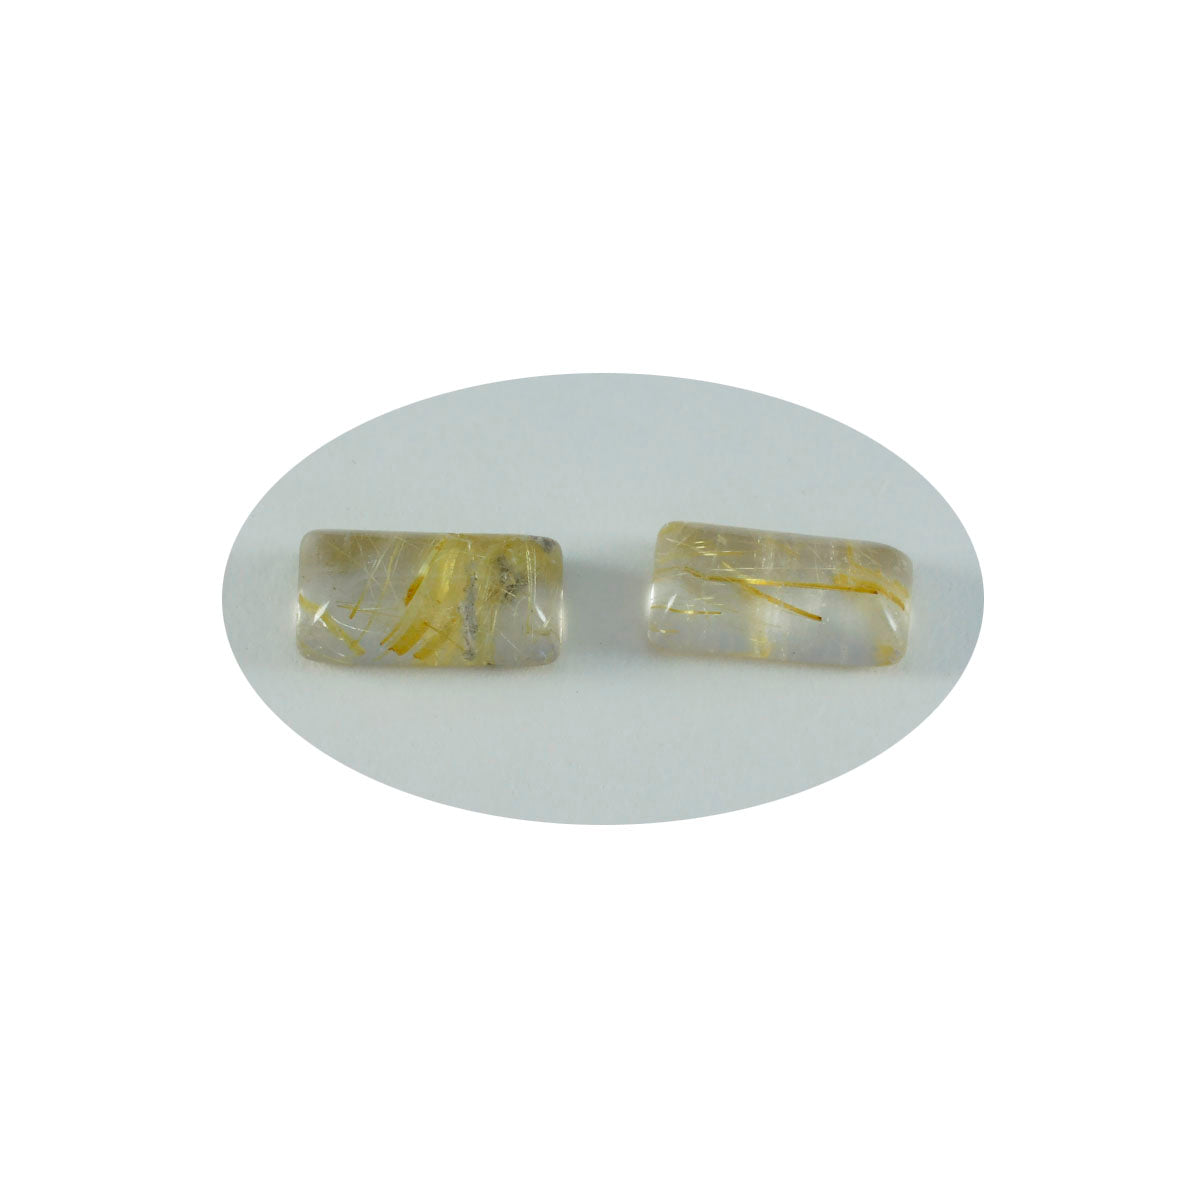 Riyogems – cabochon de quartz multi-rutile, 5x10mm, en forme de baguette, pierres précieuses en vrac de qualité aaa, 1 pièce